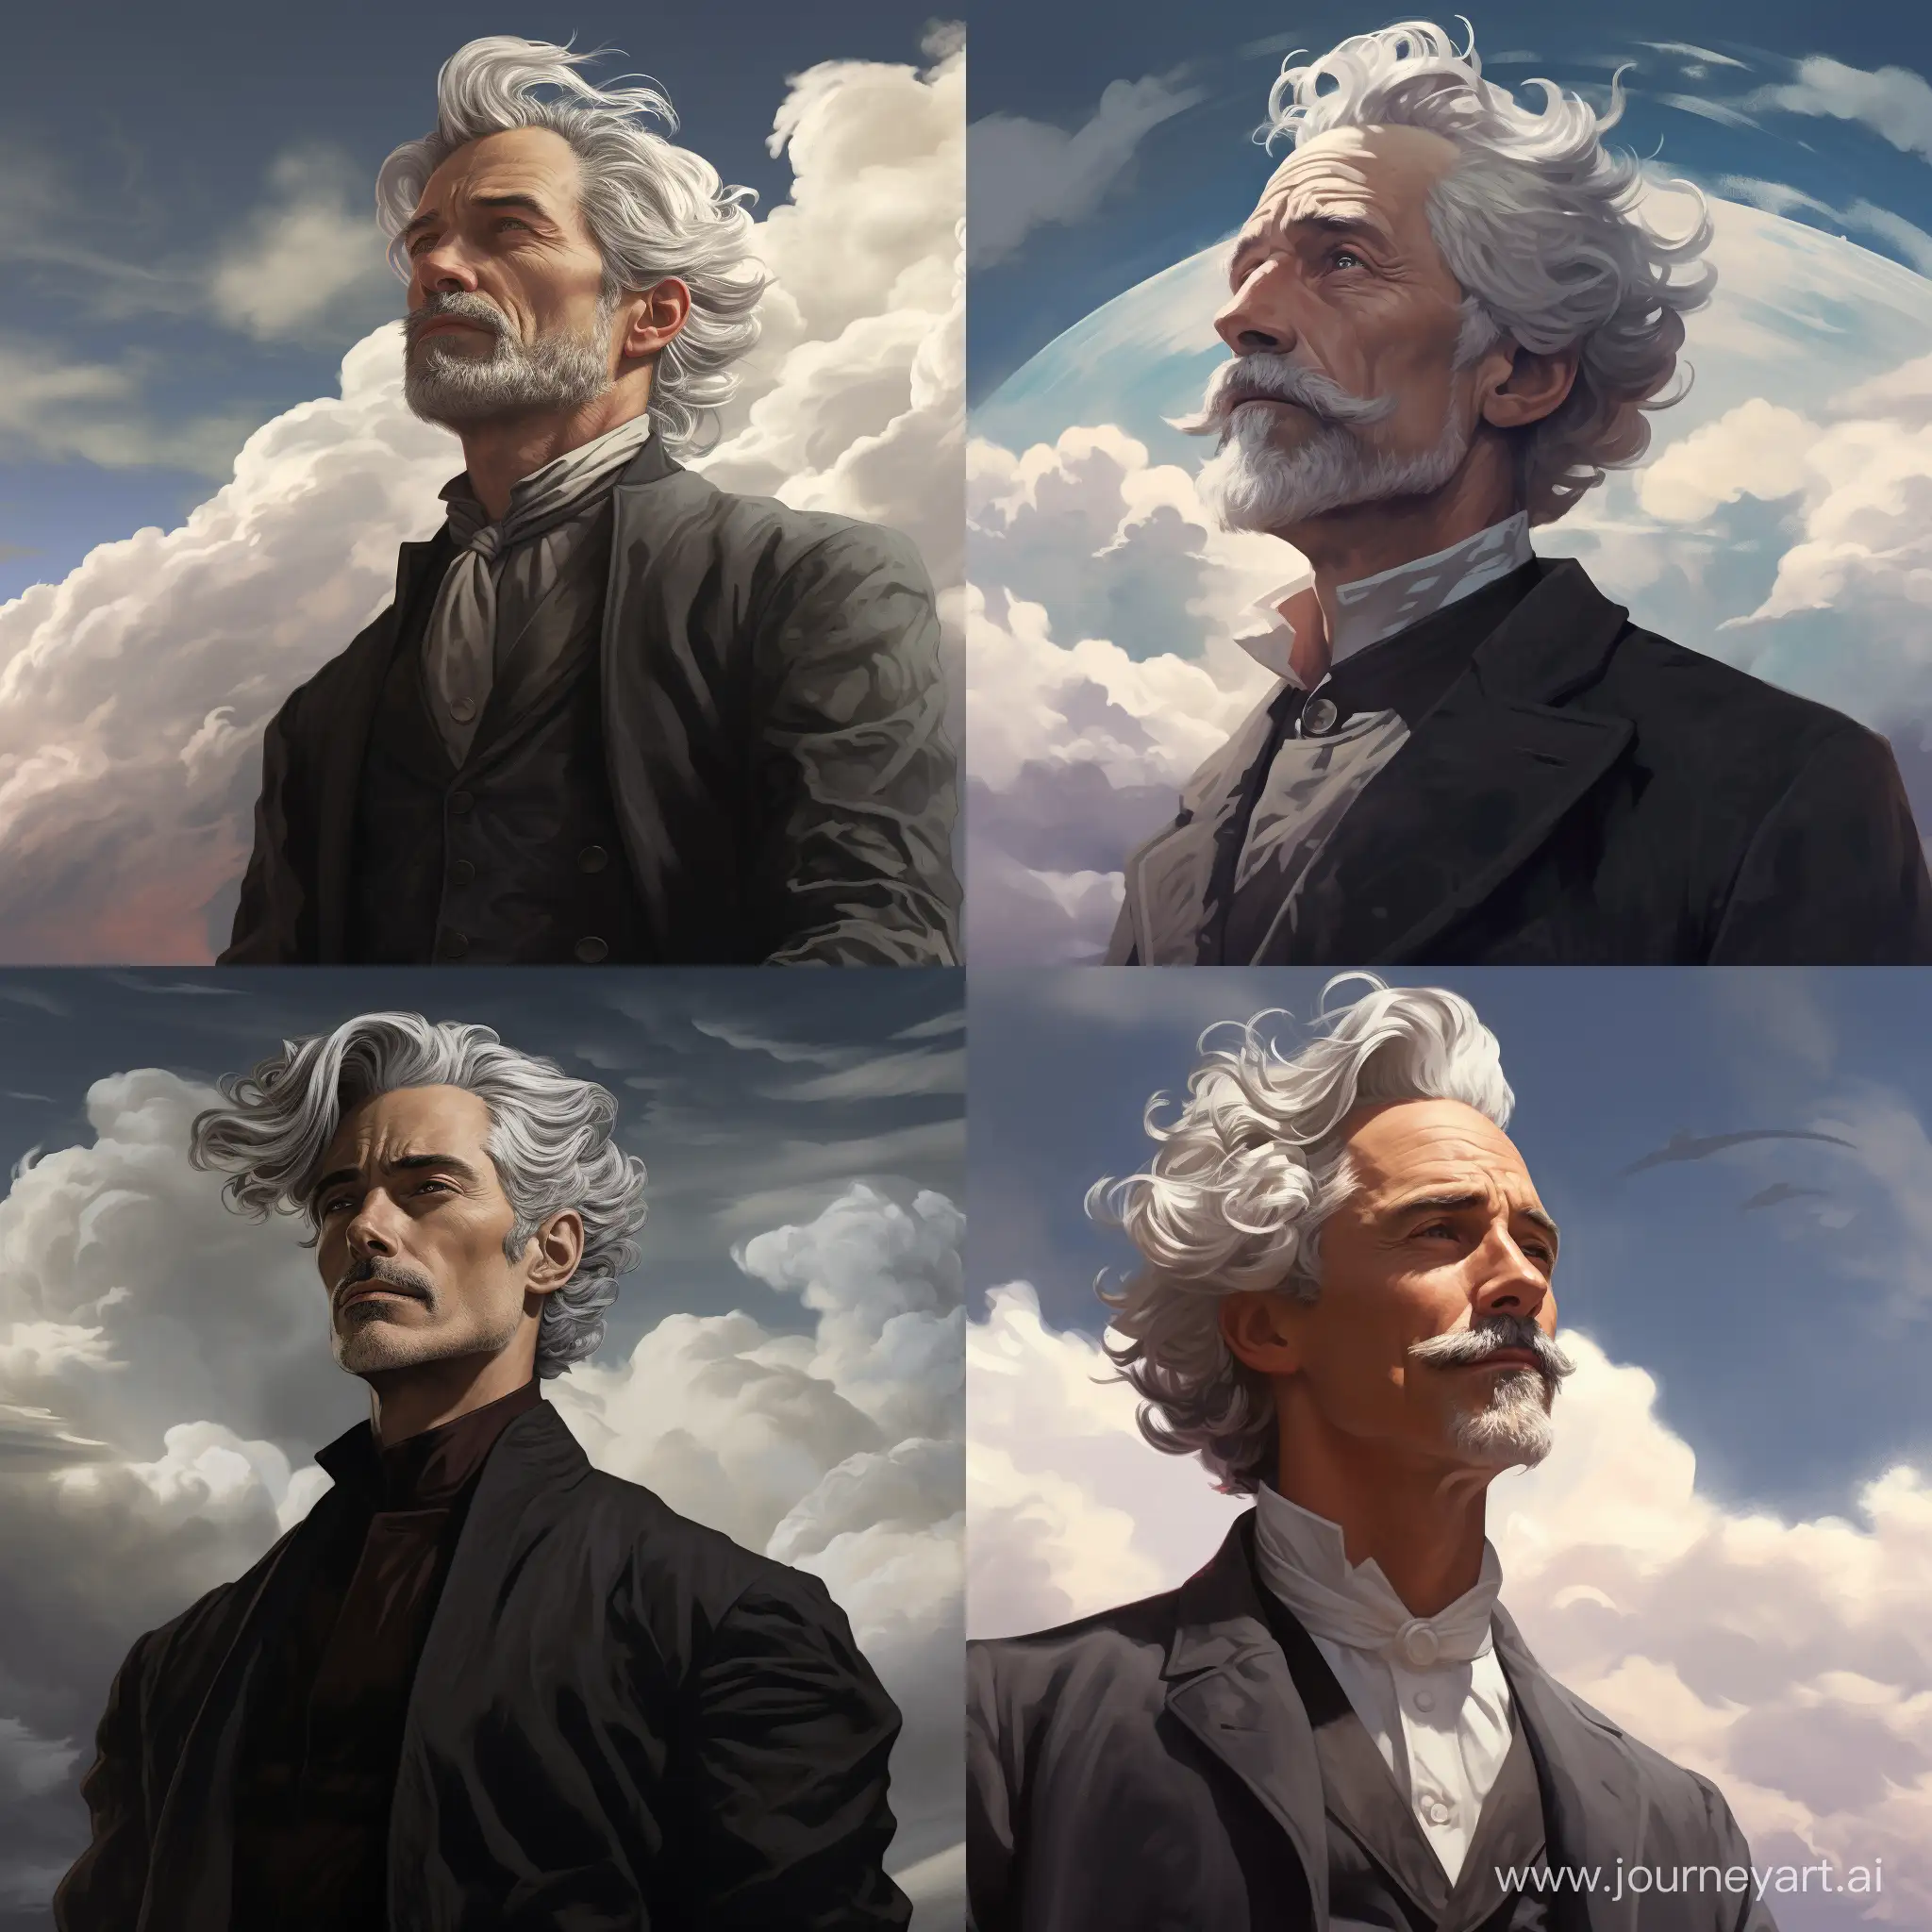 Элегантный, эпичный мужчина с седыми волосами обьединённый с ветром, смотрит влево вдаль на фоне облаков